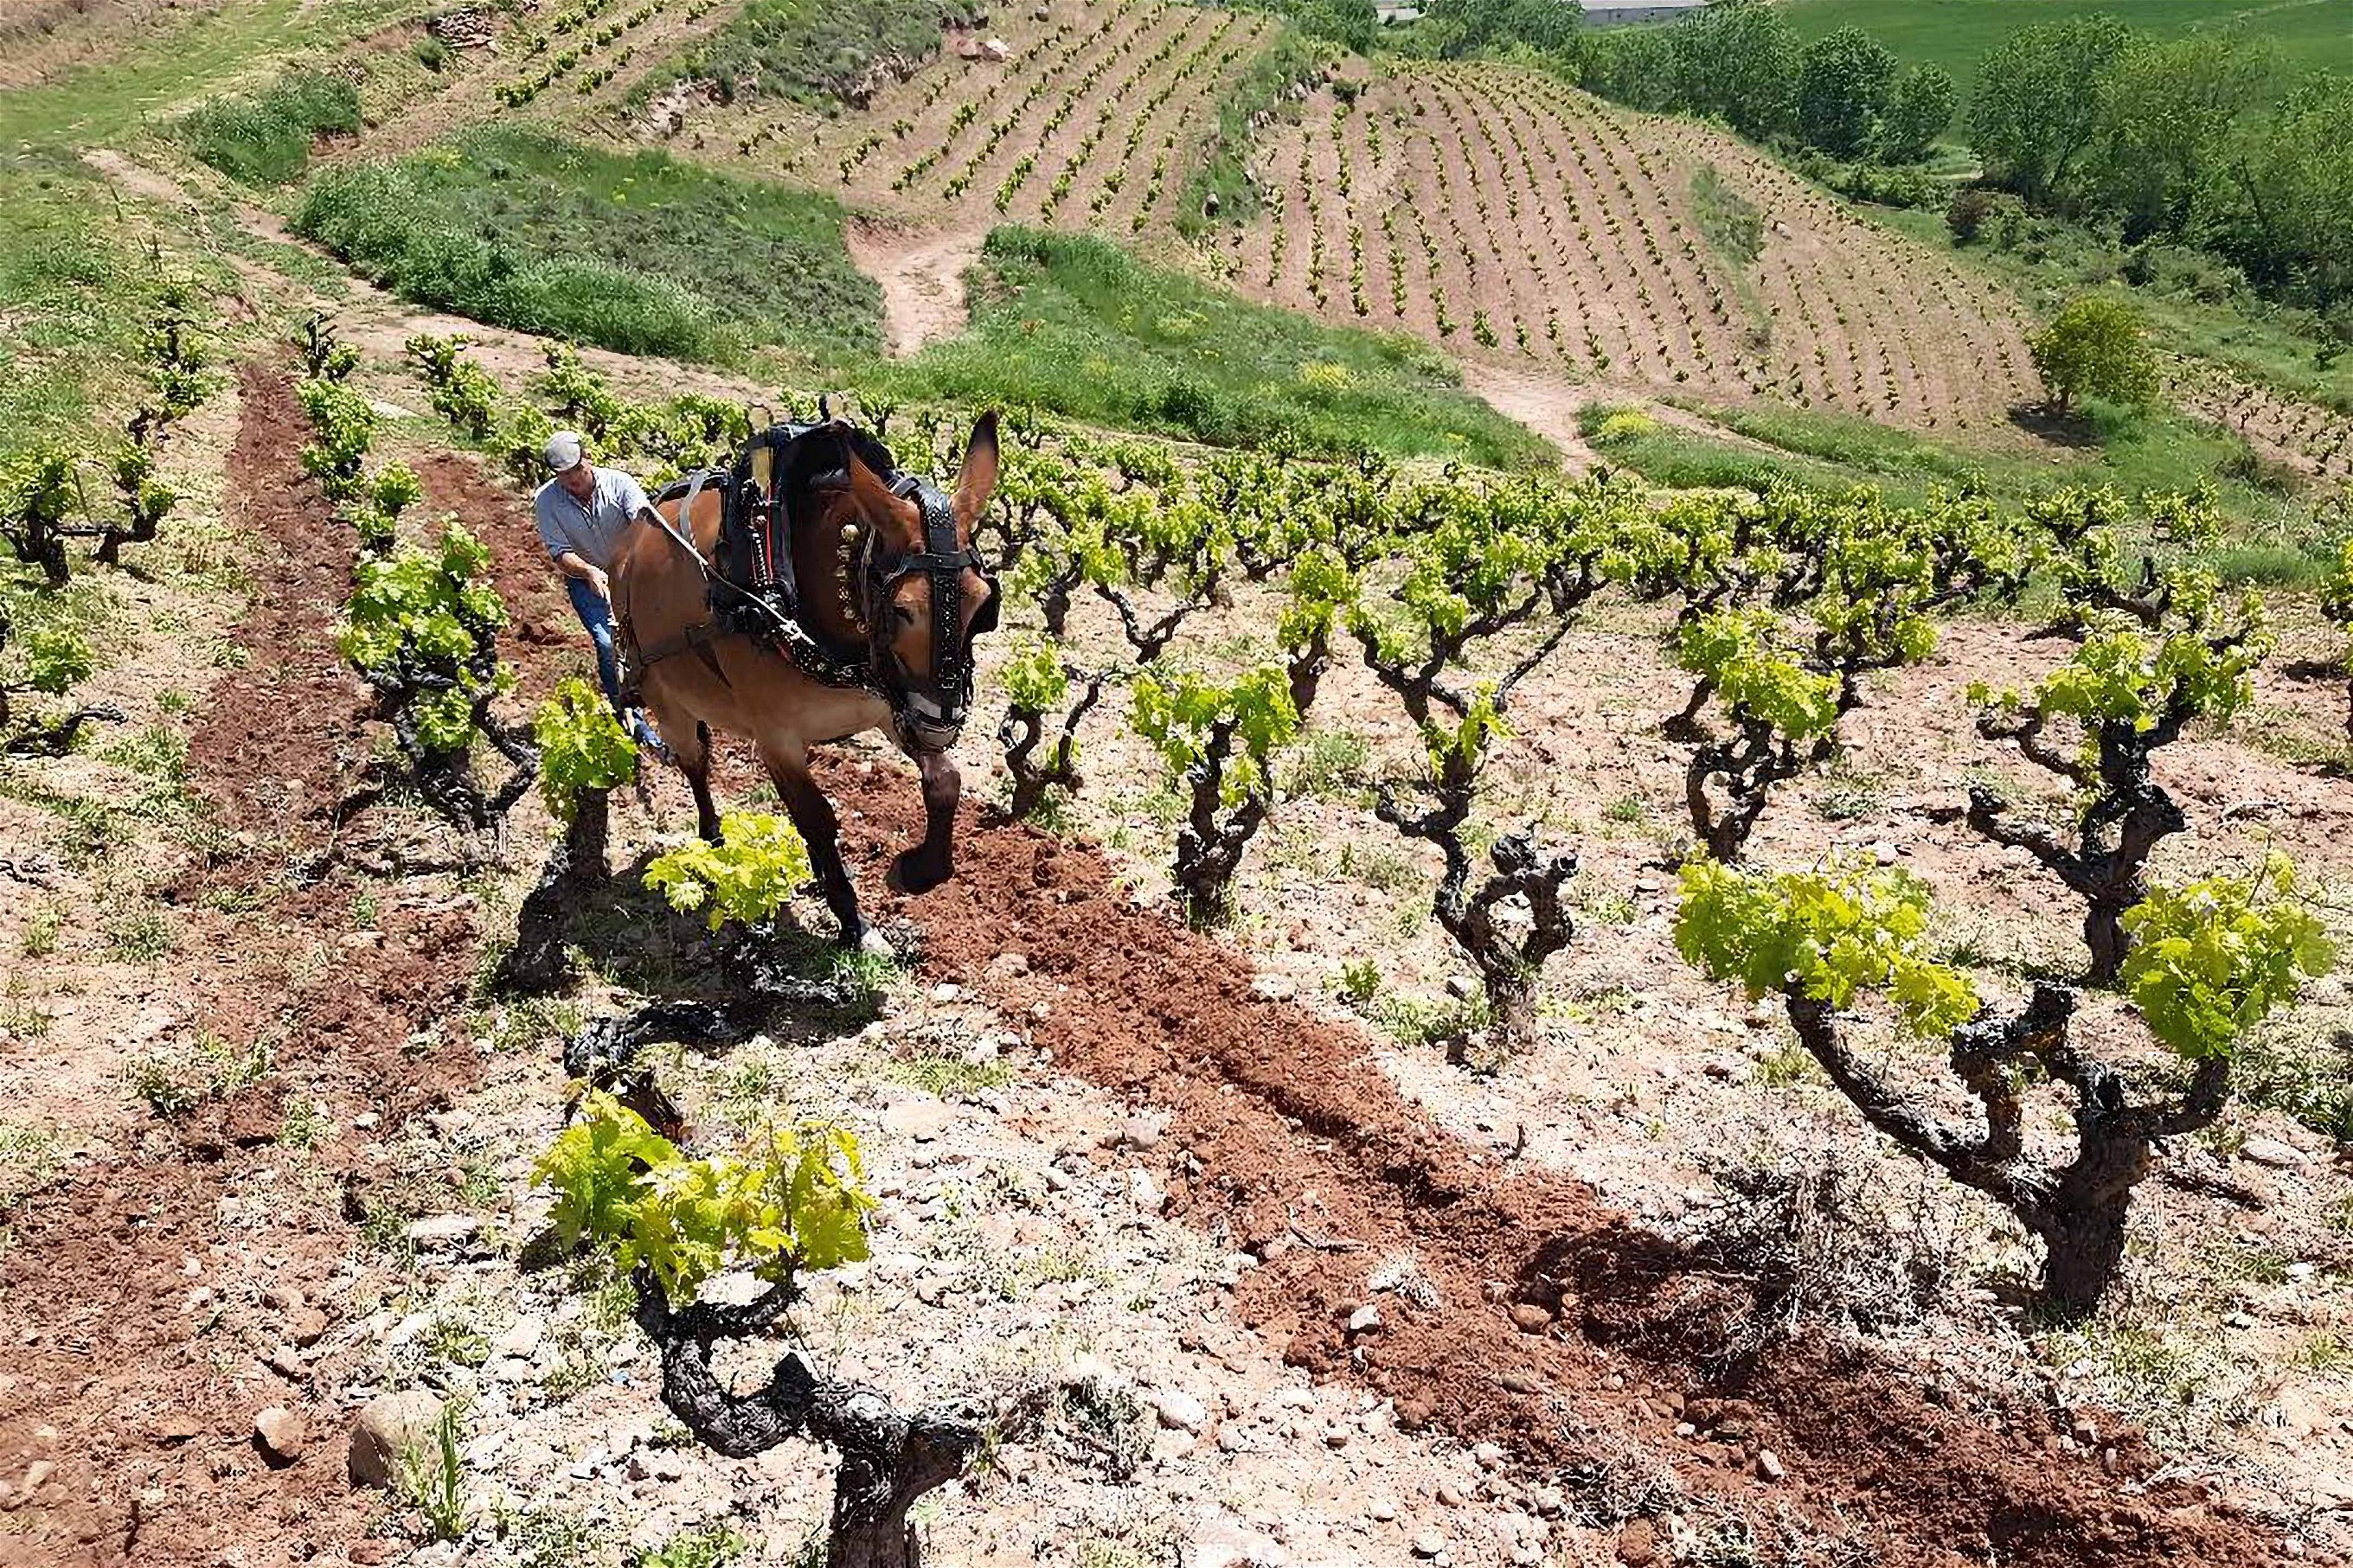 Maschinen haben in Juan Carlos Sanchas Peña el Gato keine Chance. Der Plot gehört zu den ersten zertifizierten Viñedos Singulares der Rioja.